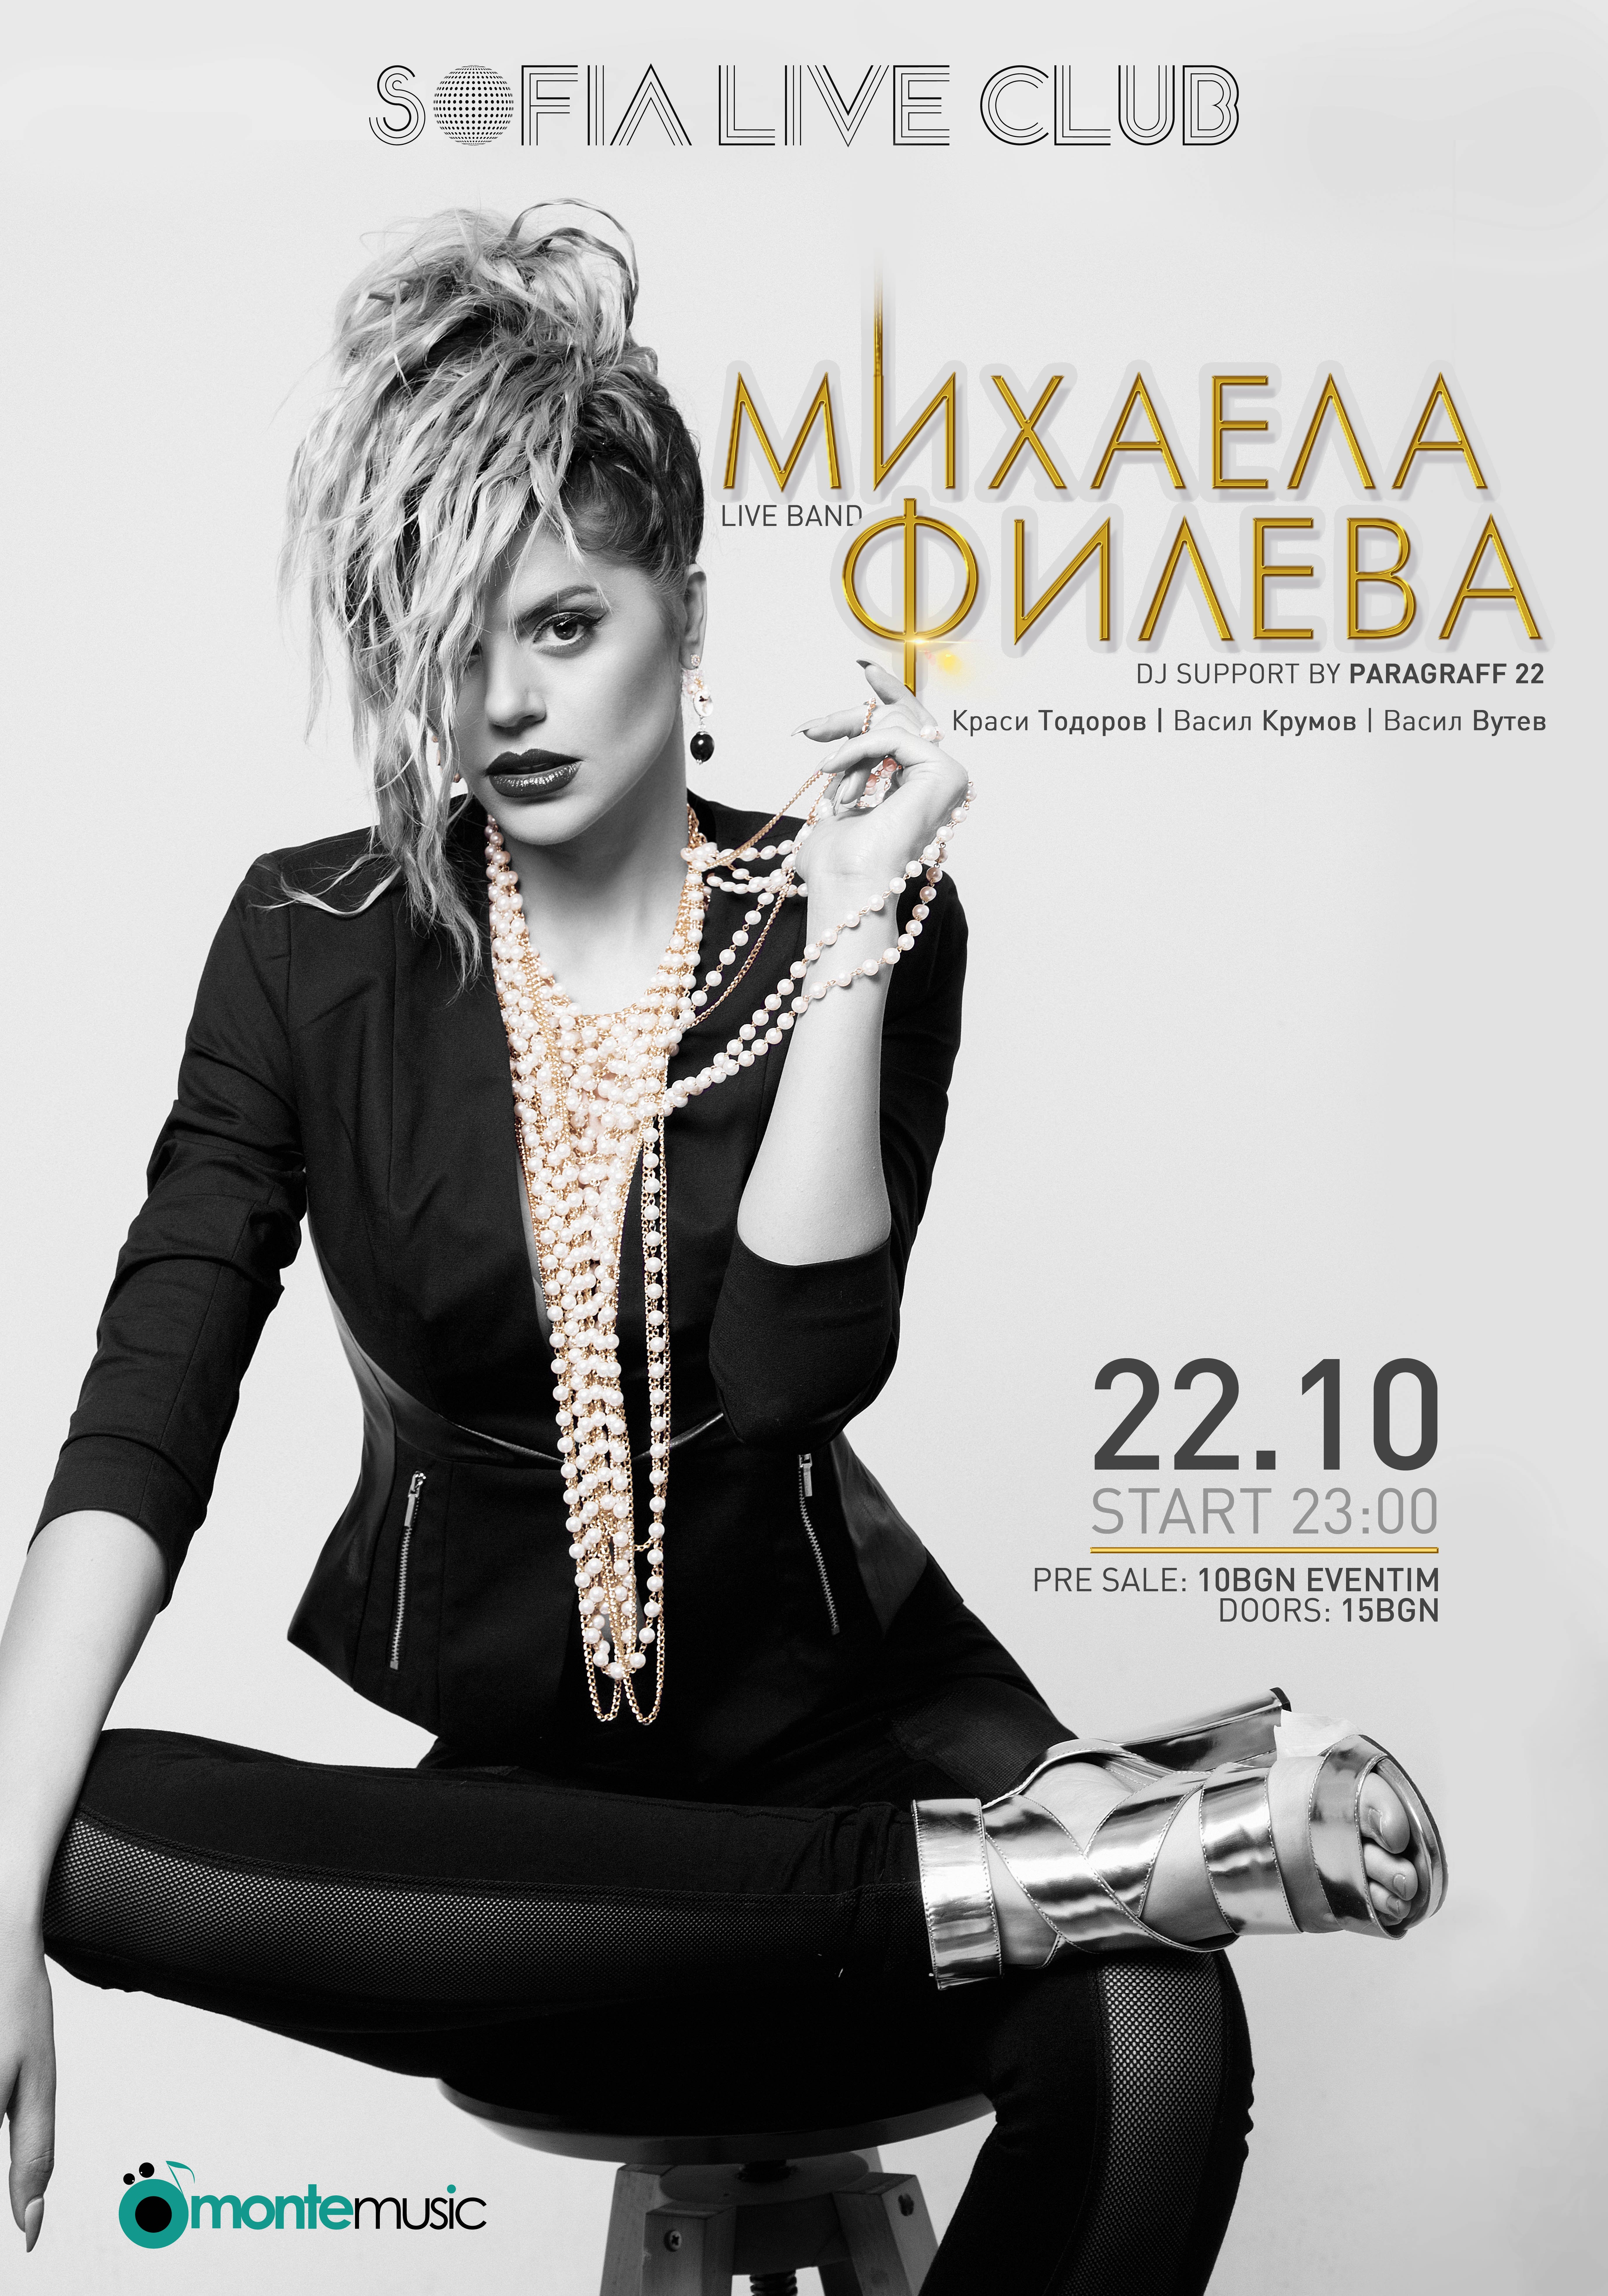 Михаела Филева с концерт в Sofia Live Club тази събота